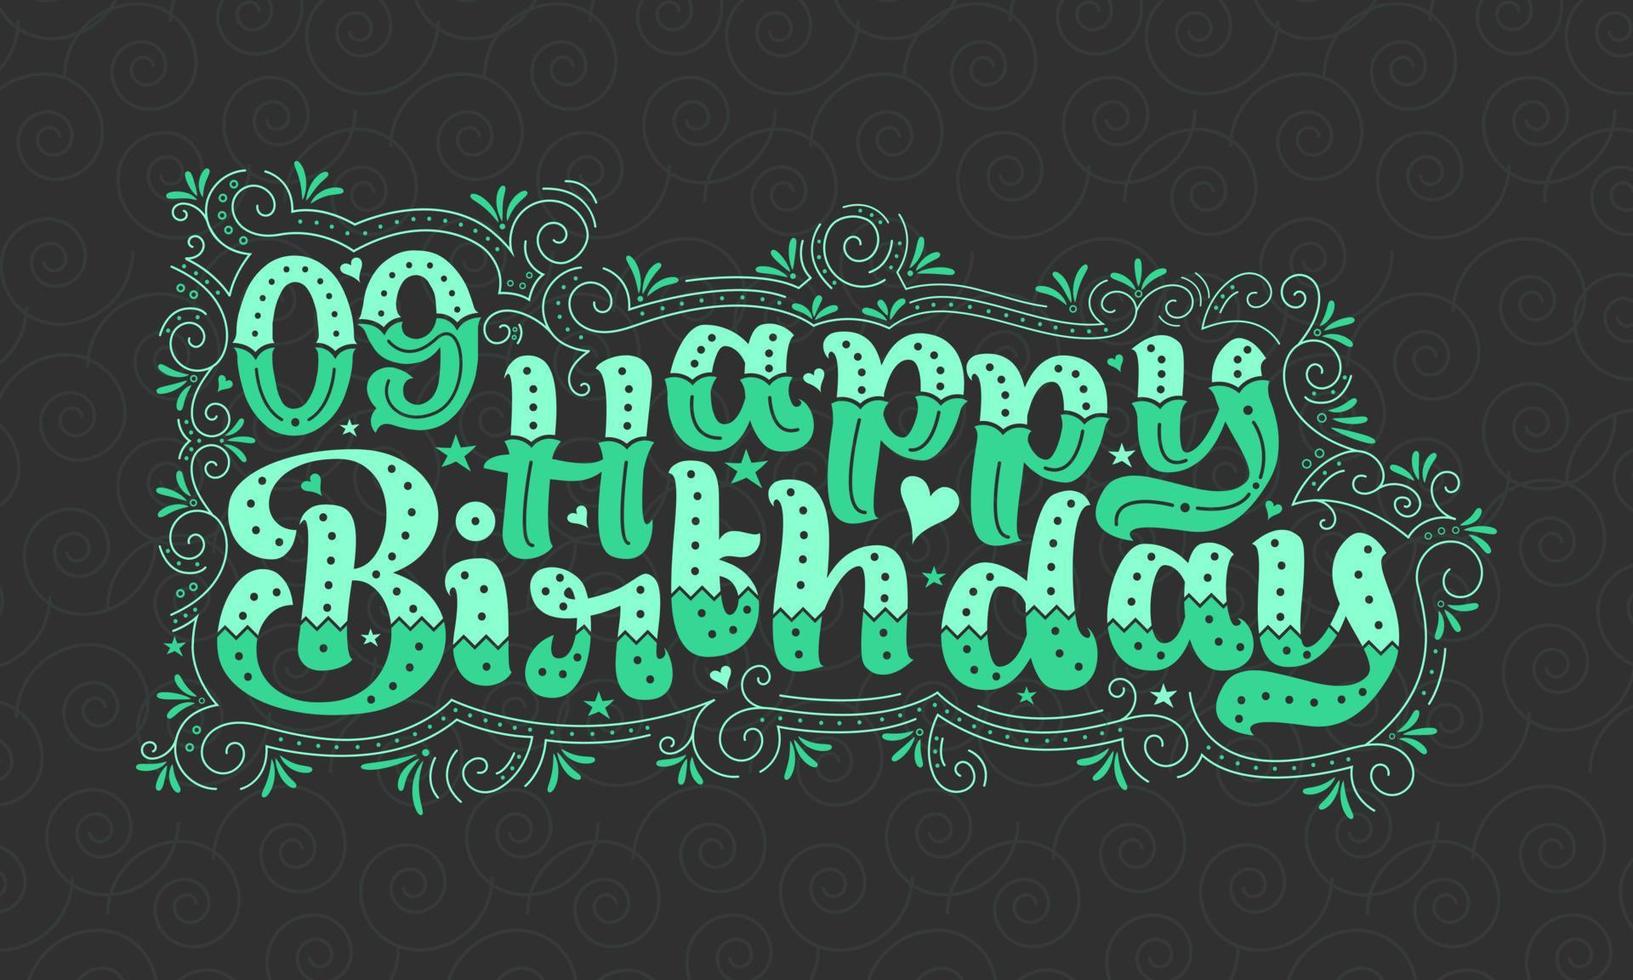 9:e grattis på födelsedagen bokstäver, 9 års födelsedag vacker typografidesign med gröna prickar, linjer och löv. vektor